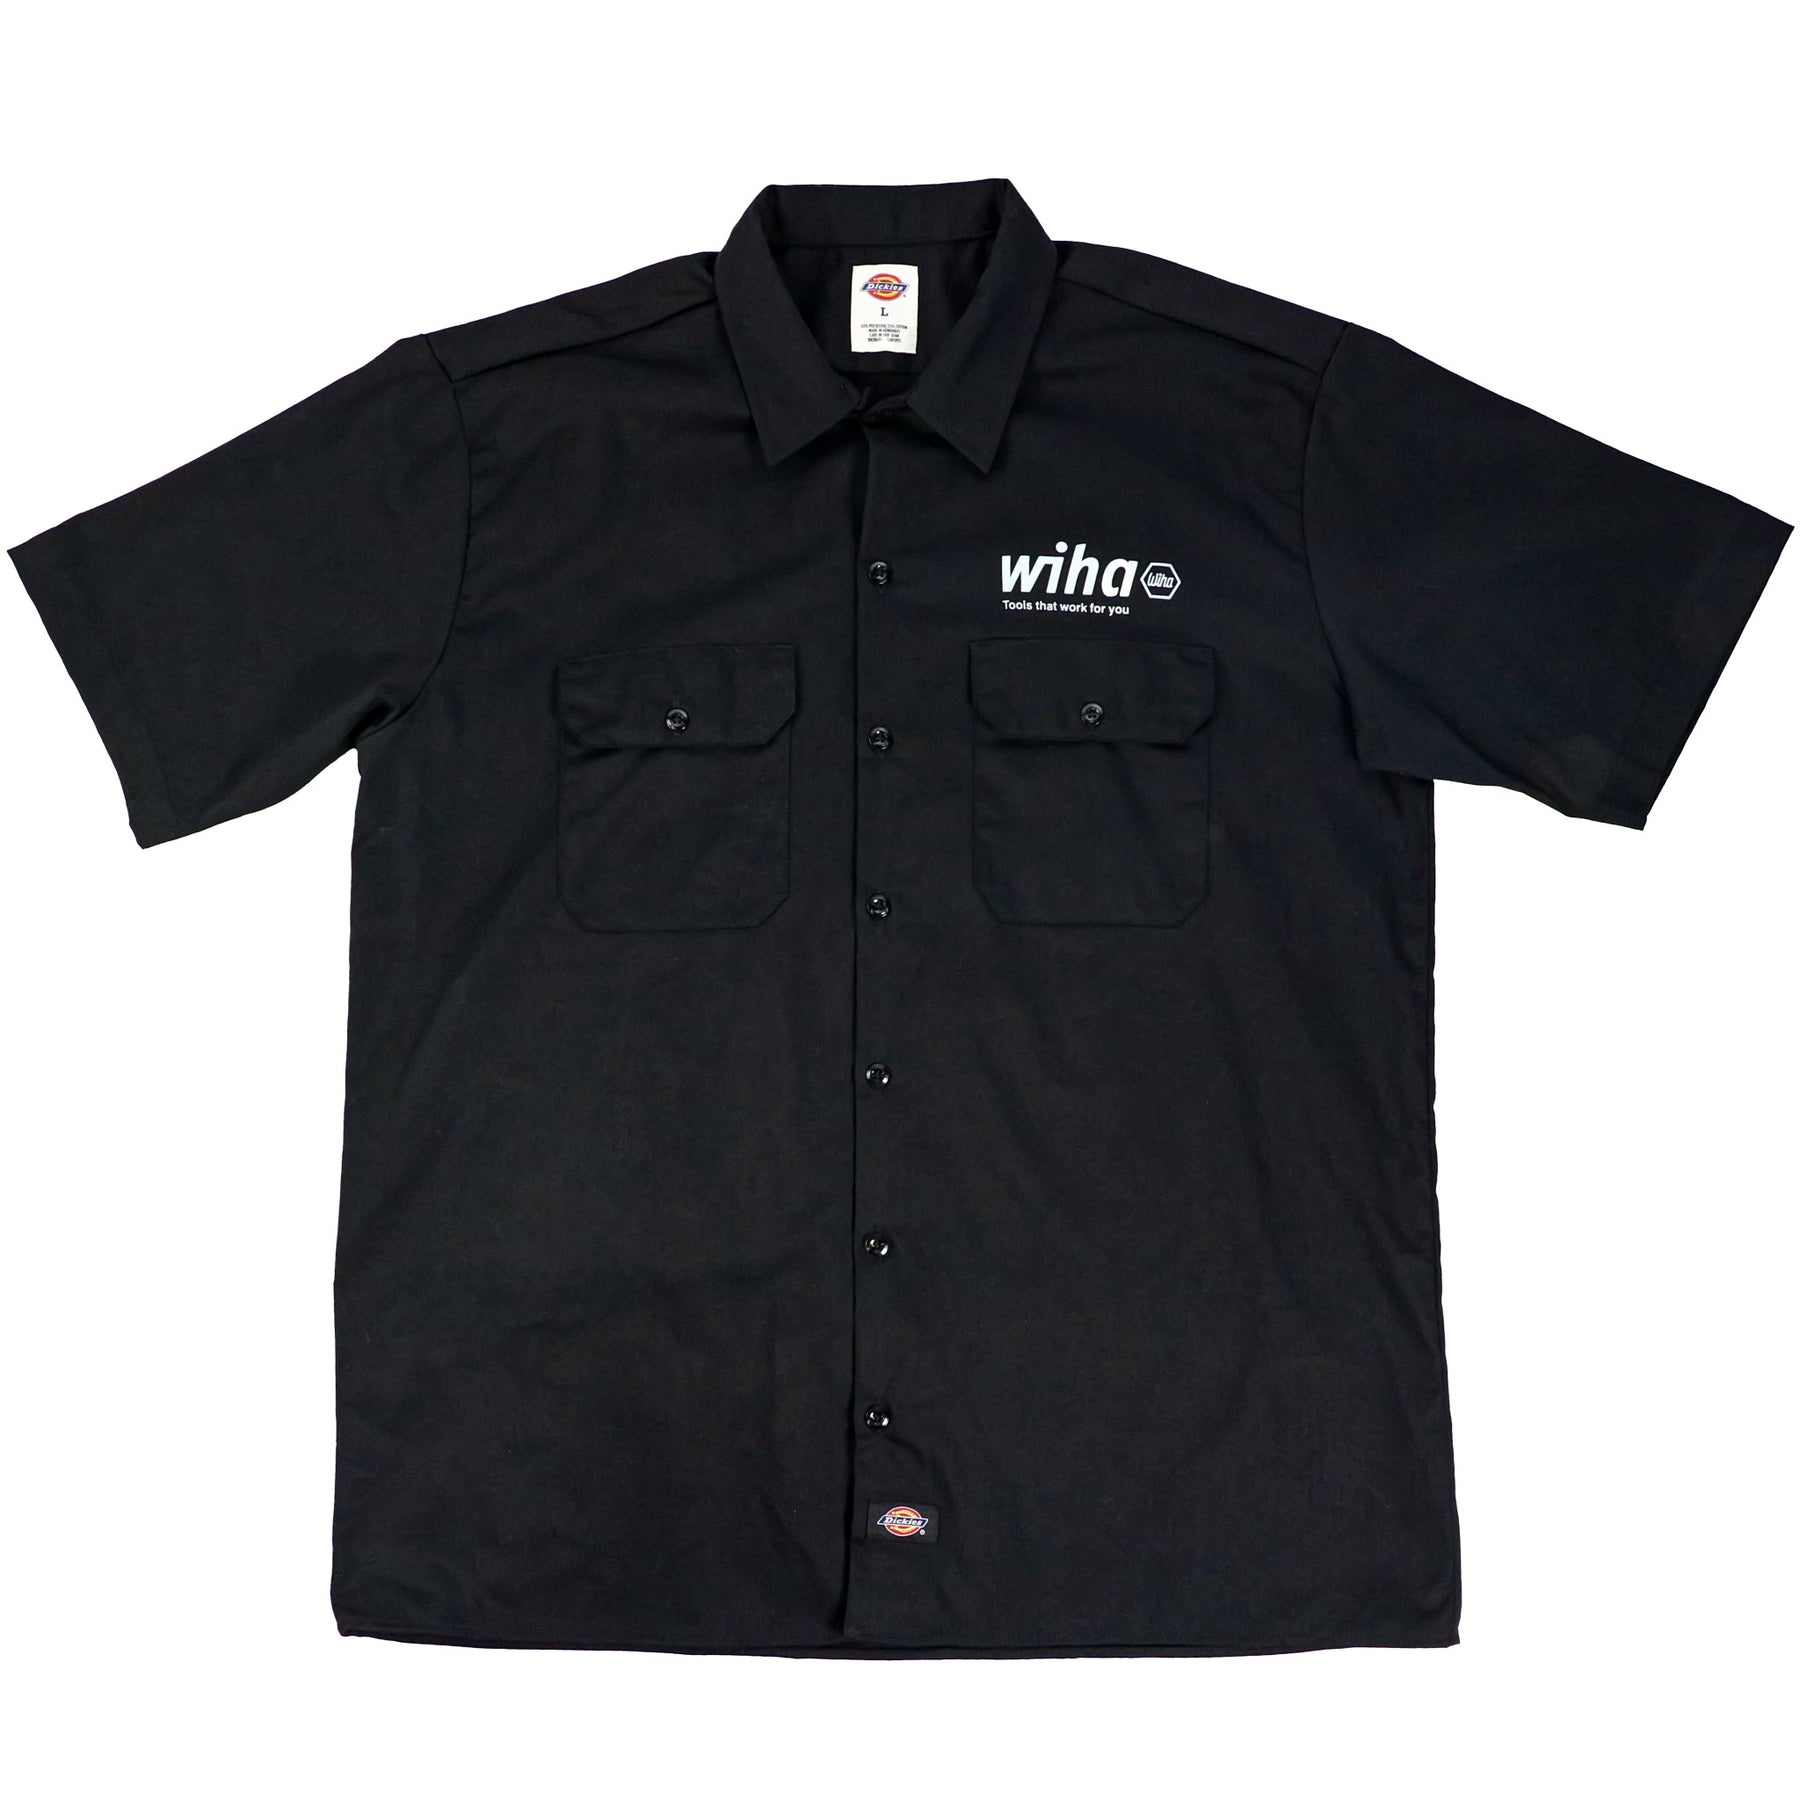 Wiha 91713 Wiha Men's Dickies Short Sleeve Work Shirt Black Medium